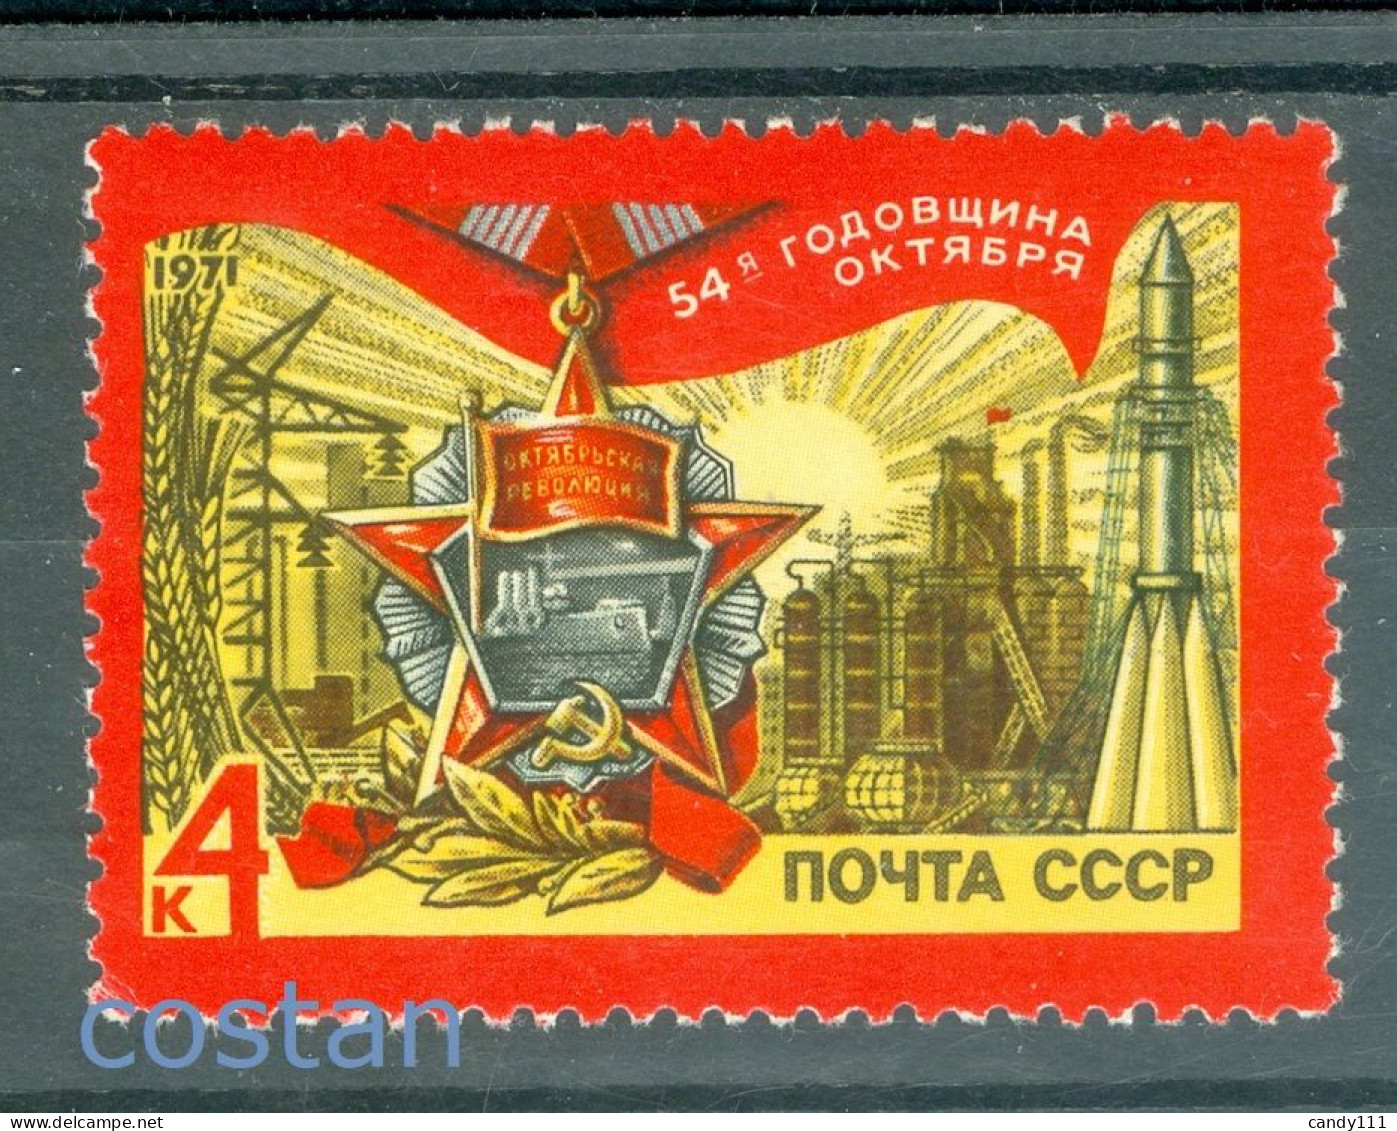 1971 October Revolution,Medal/Potemkin,Industry,Rocket,Power,Russia,3838,MNH - Ongebruikt